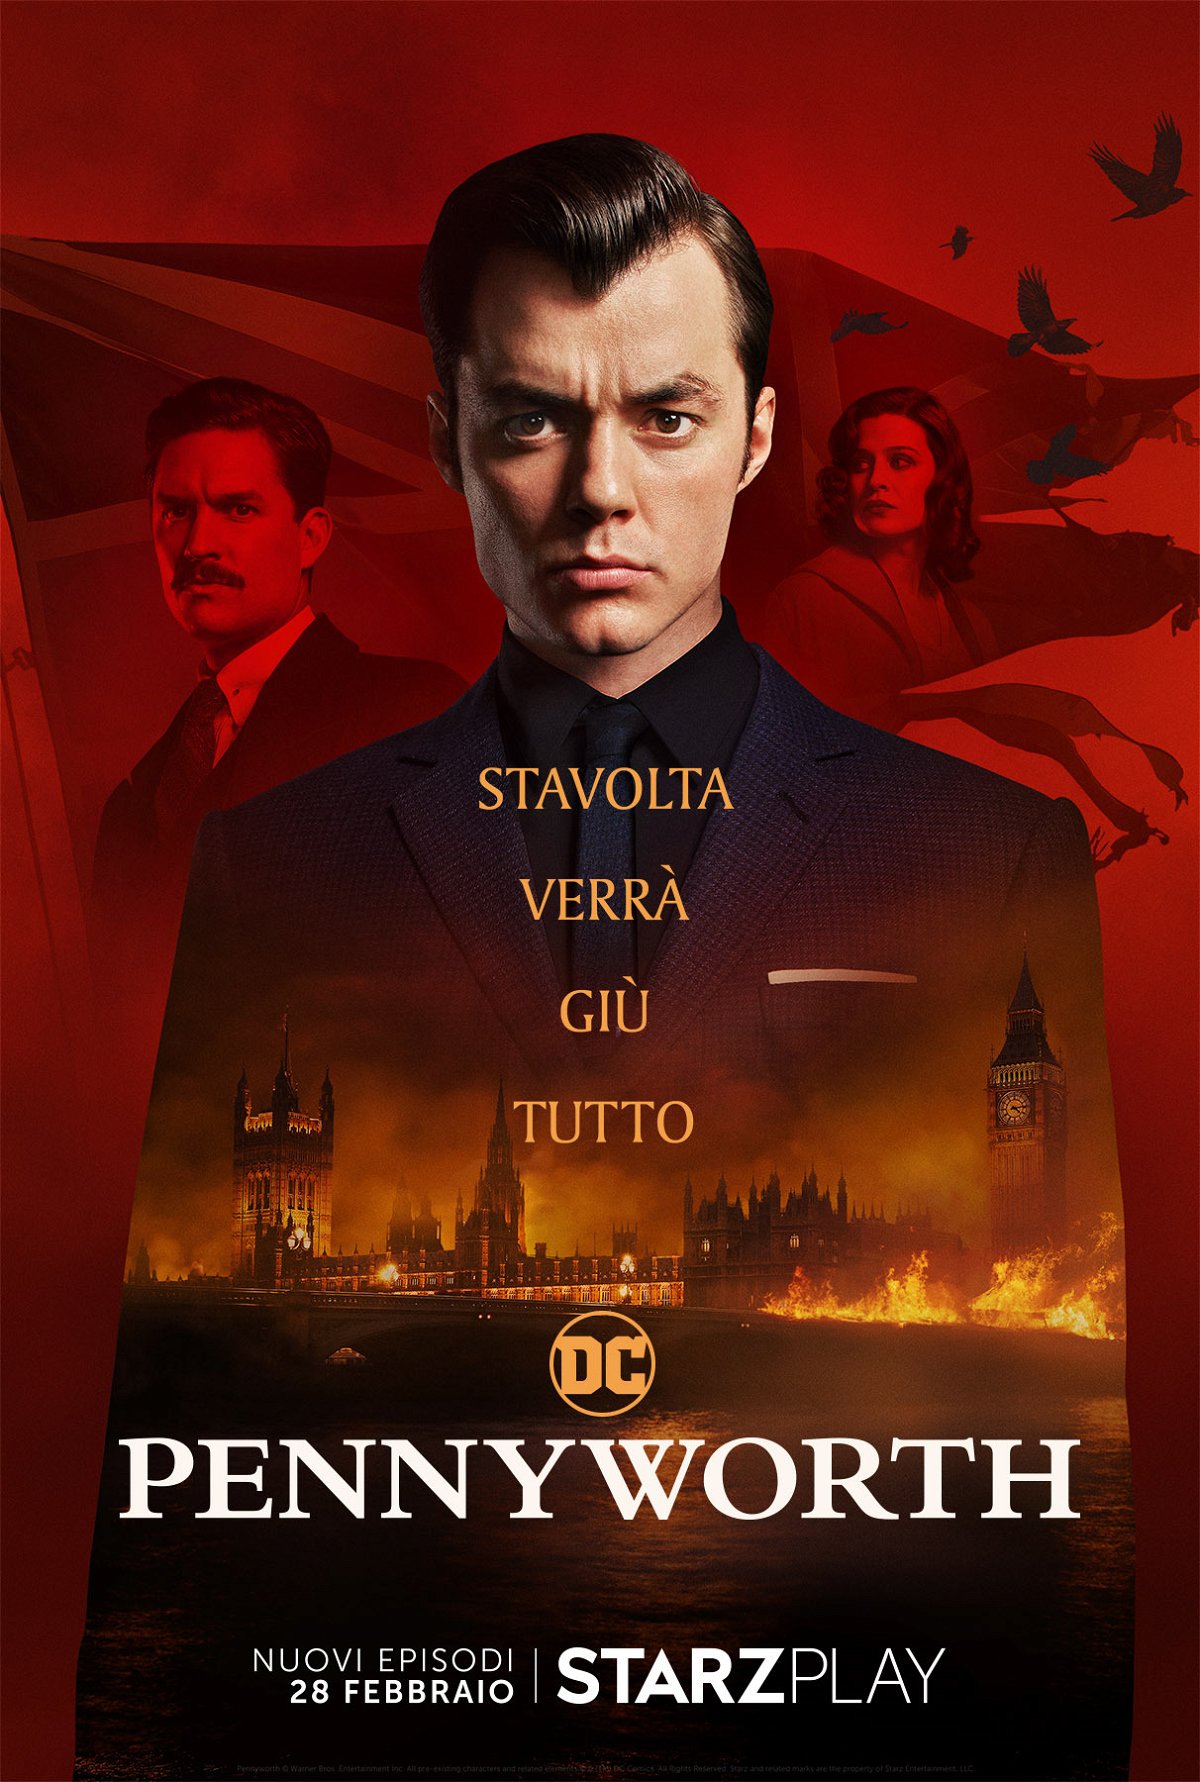 Pennyworth, il poster promozionale della seconda stagione 